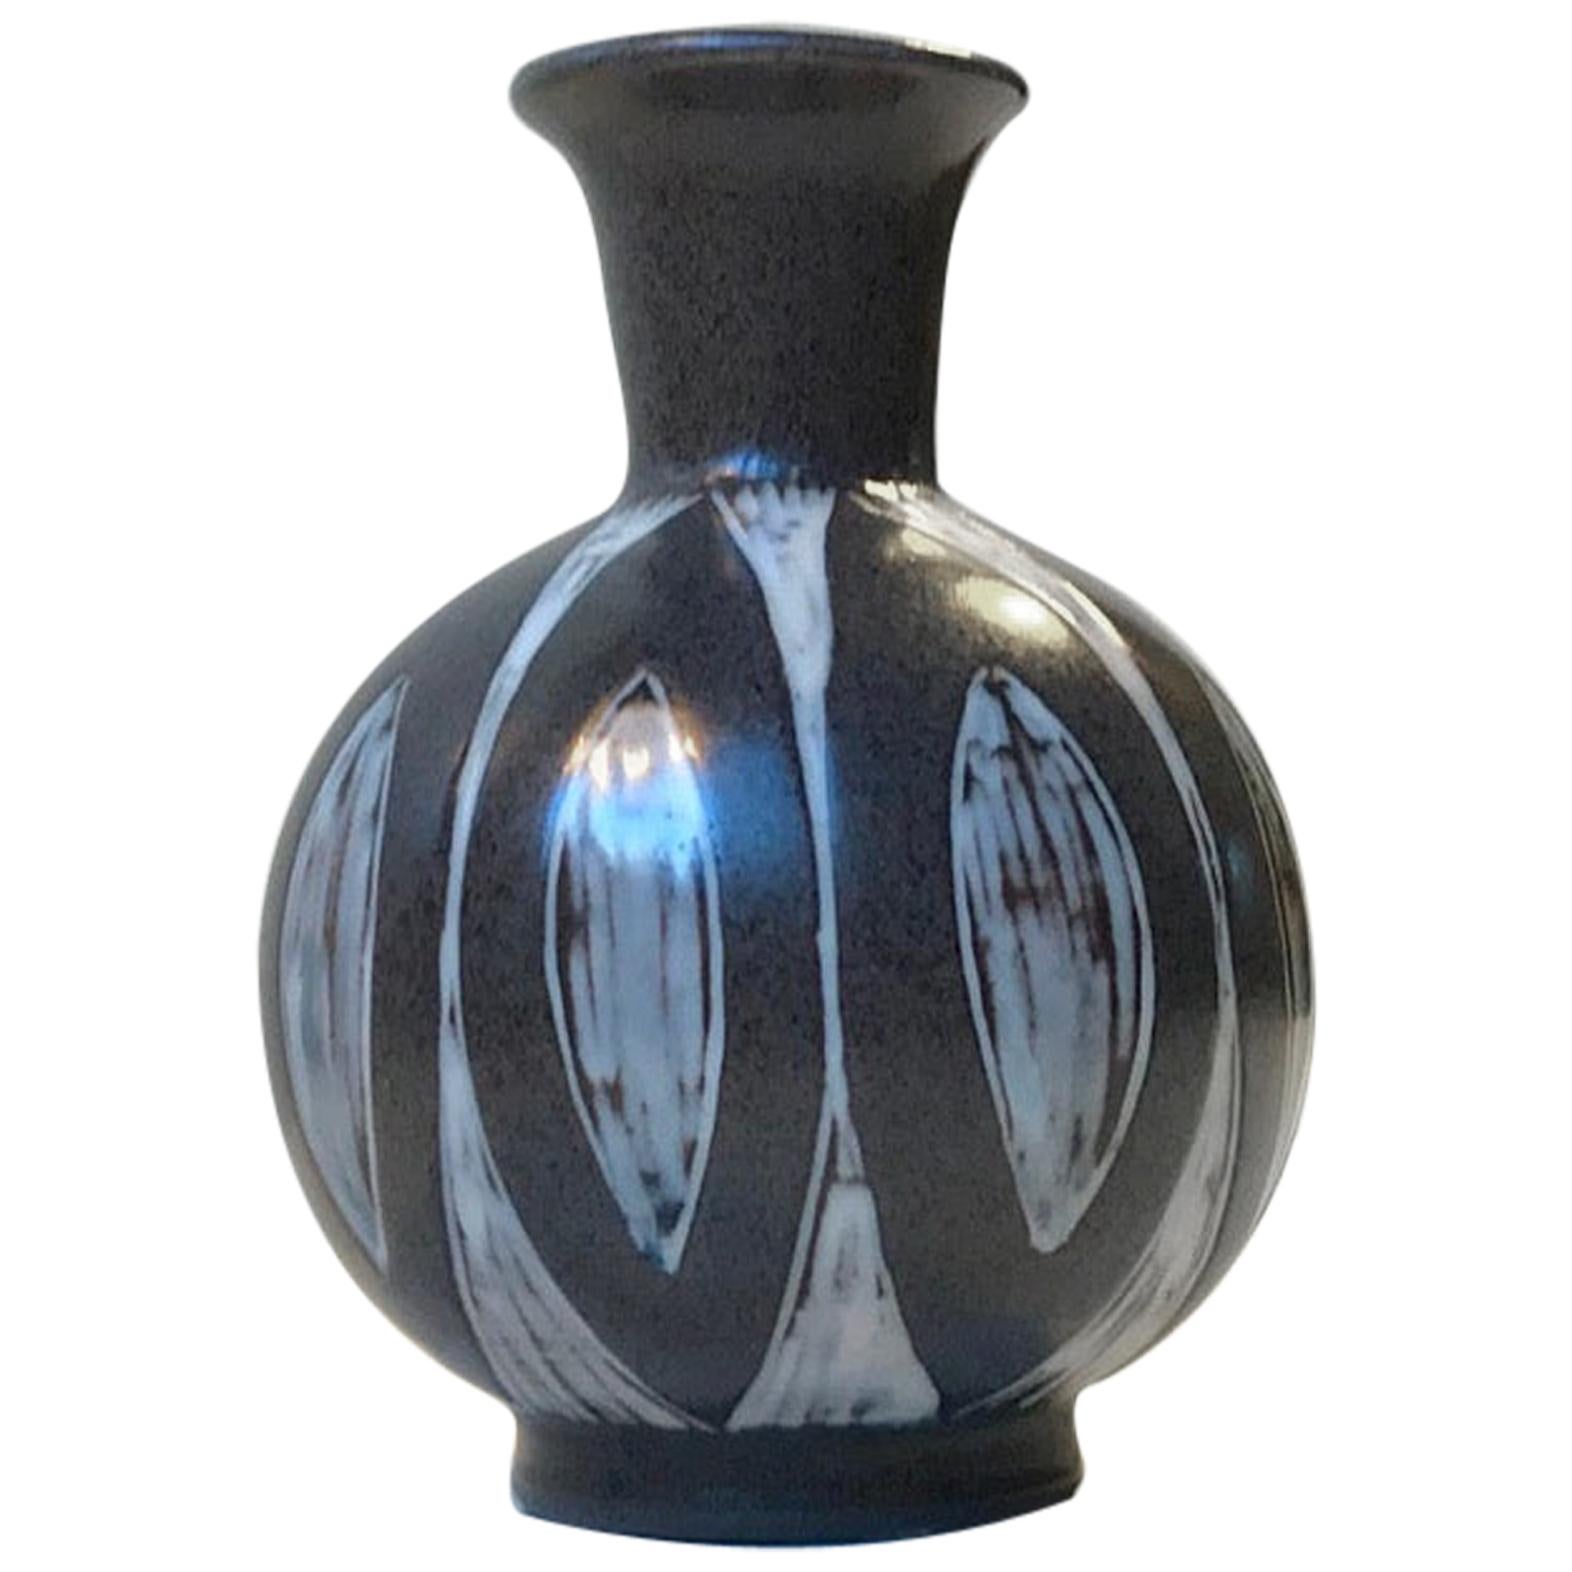 Danish Modernist Ceramic Vase by Eva & Johannes Andersen, 1960s